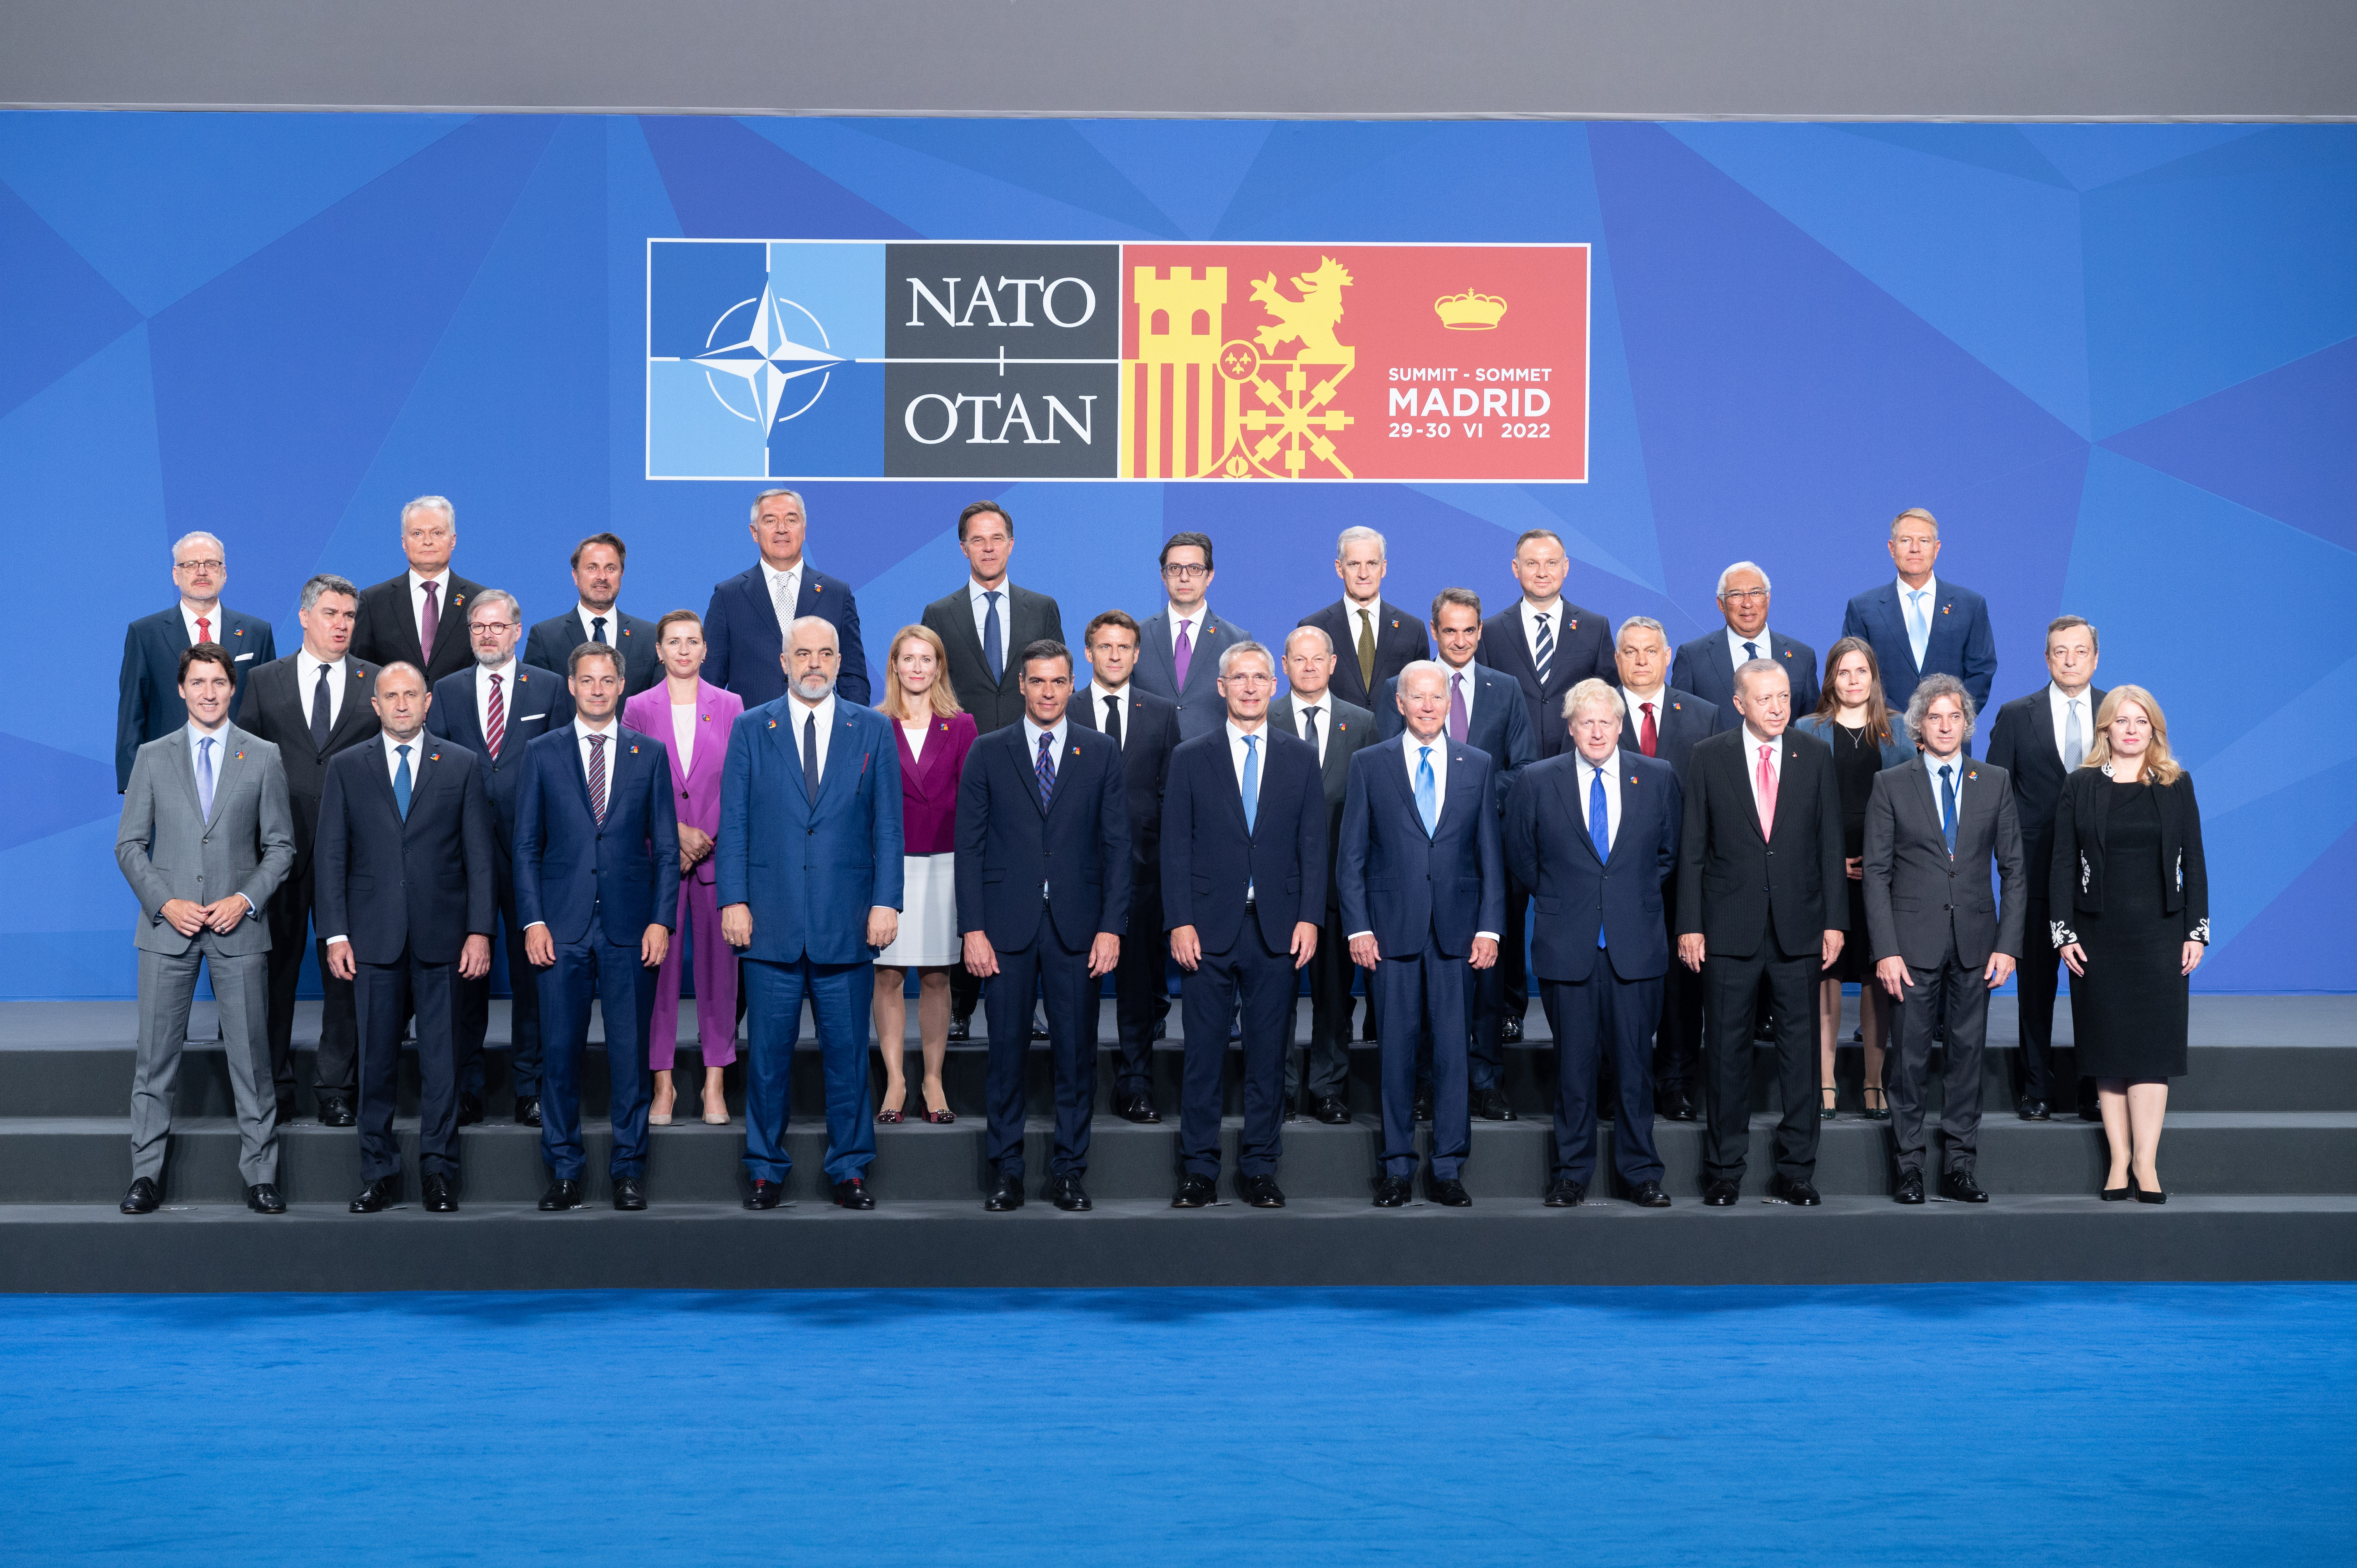 Глава альянса нато. Саммит НАТО В Мадриде 2022. Саммит НАТО В Мадриде 2022 общее фото. Мадридский саммит НАТО В 2022 году. Саммит НАТО 2022.